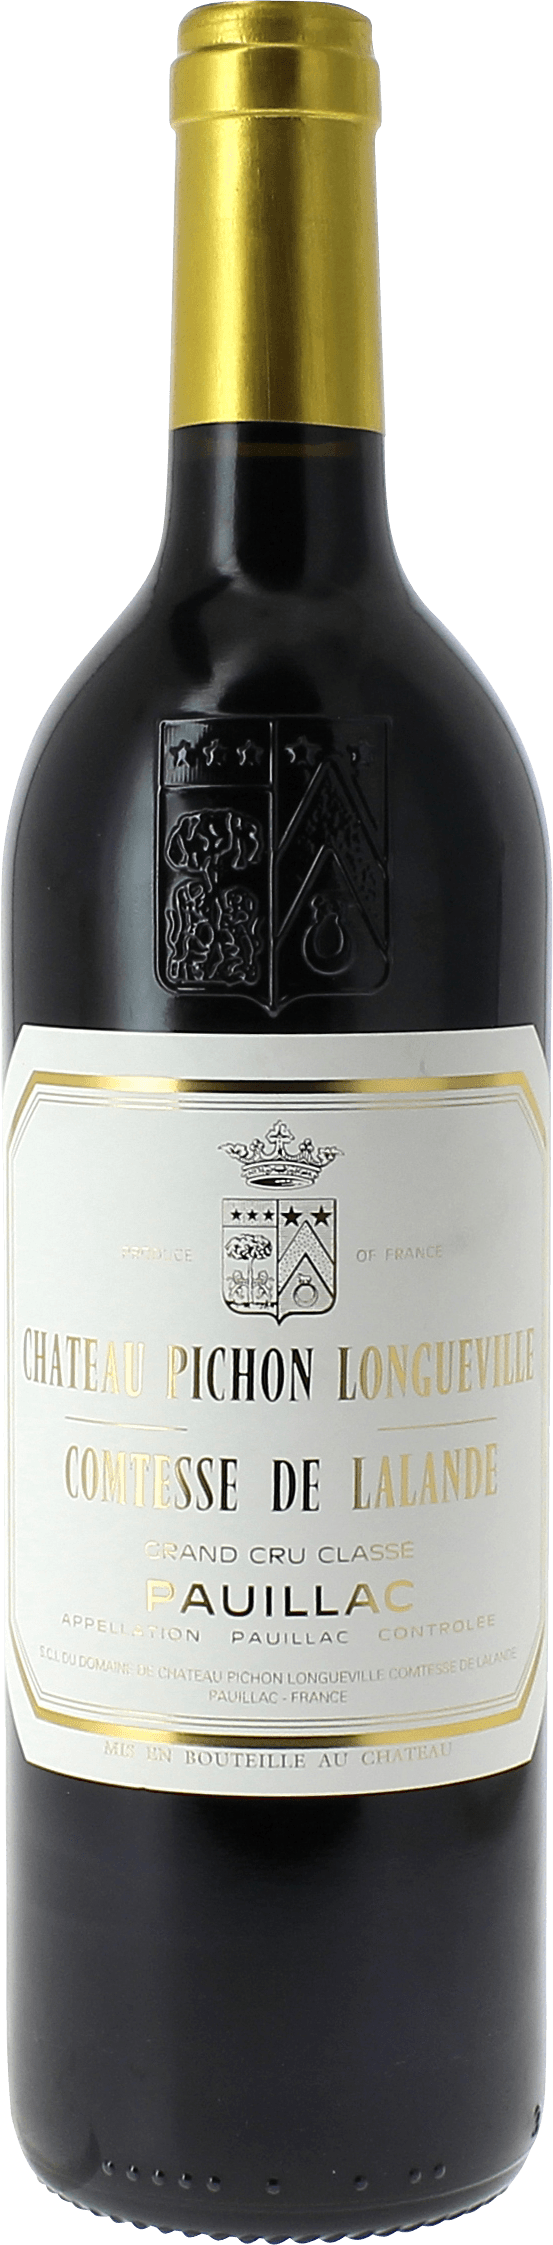 Pichon comtesse de lalande 1986 2me Grand cru class Pauillac, Bordeaux rouge